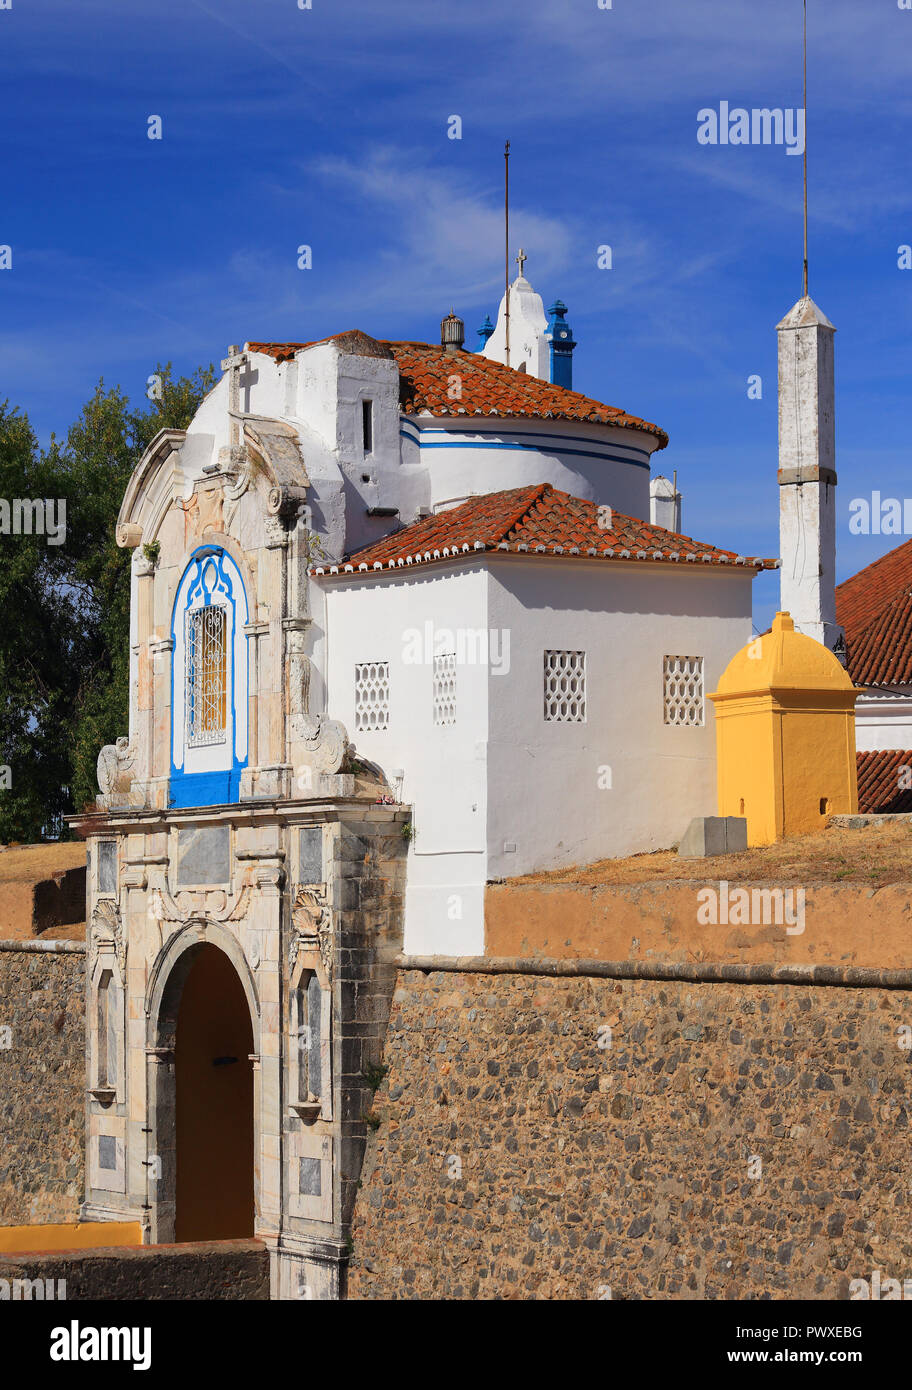 Il Portogallo, regione Alentejo, Elvas. Un ornato city gate e la cappella e nell'antica città fortificata a parete. La città di confine è un sito Patrimonio Mondiale dell'UNESCO. Foto Stock